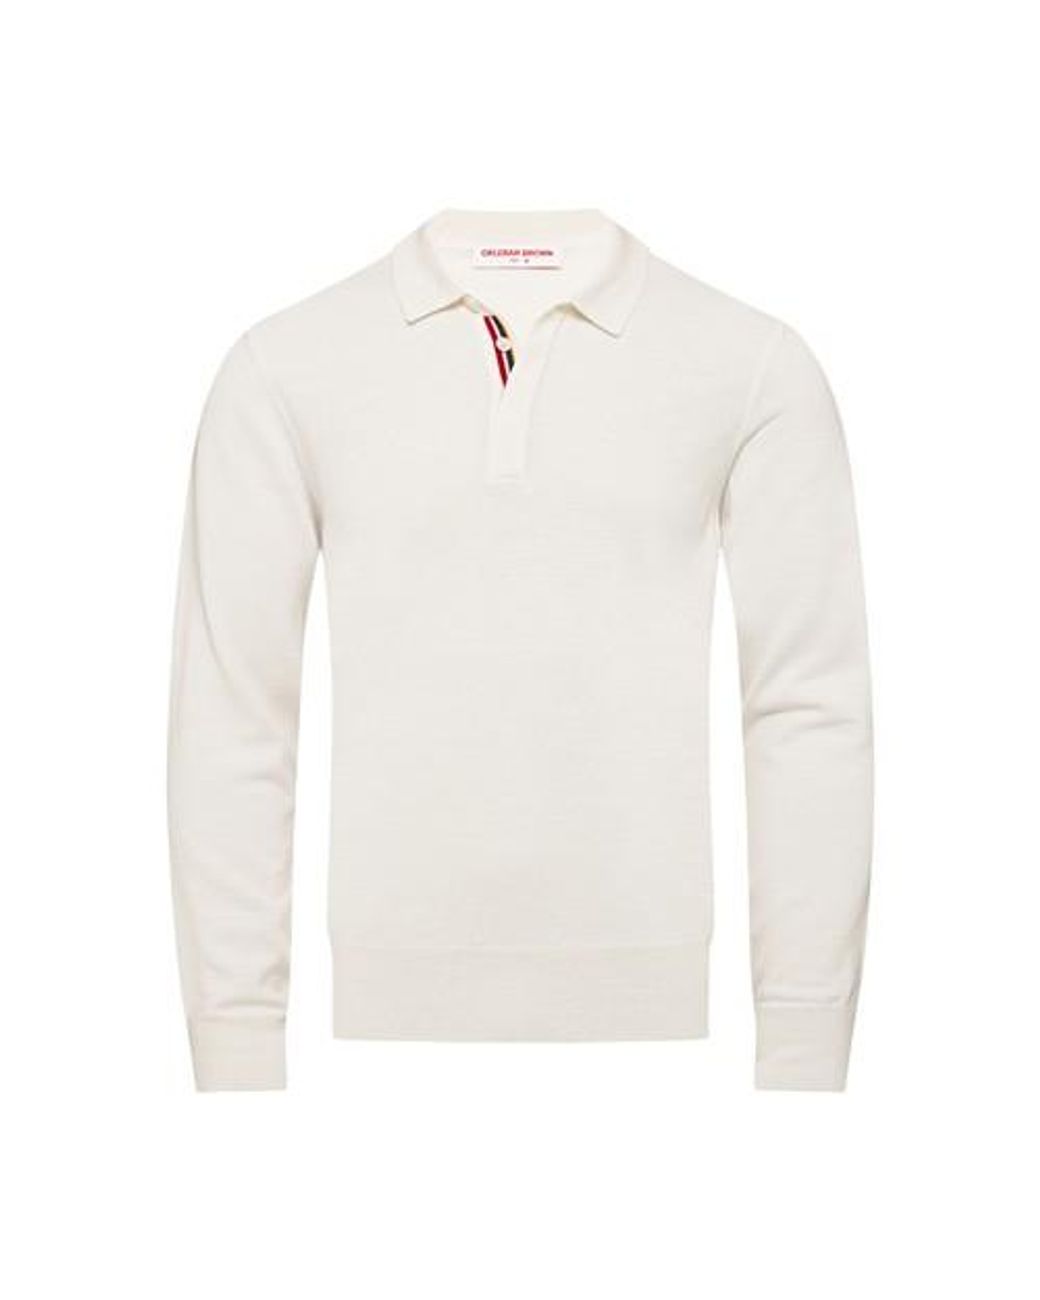 Orlebar Brown Ebro Ob Stripe Polo Shirt in White for Men | Lyst UK